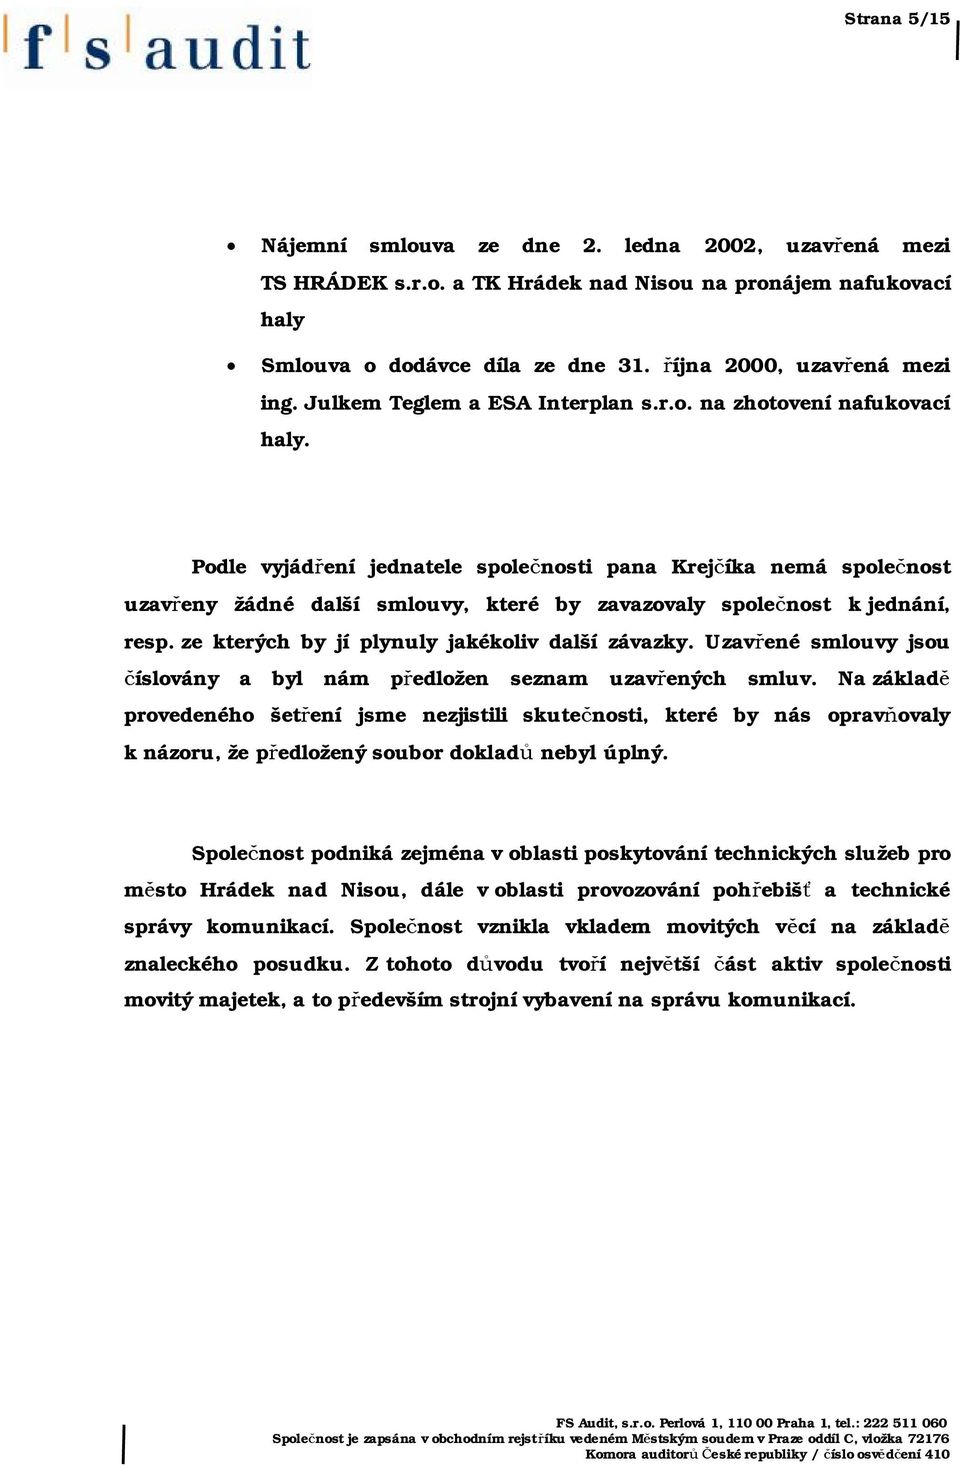 Podle vyjádření jednatele společnosti pana Krejčíka nemá společnost uzavřeny žádné další smlouvy, které by zavazovaly společnost k jednání, resp. ze kterých by jí plynuly jakékoliv další závazky.